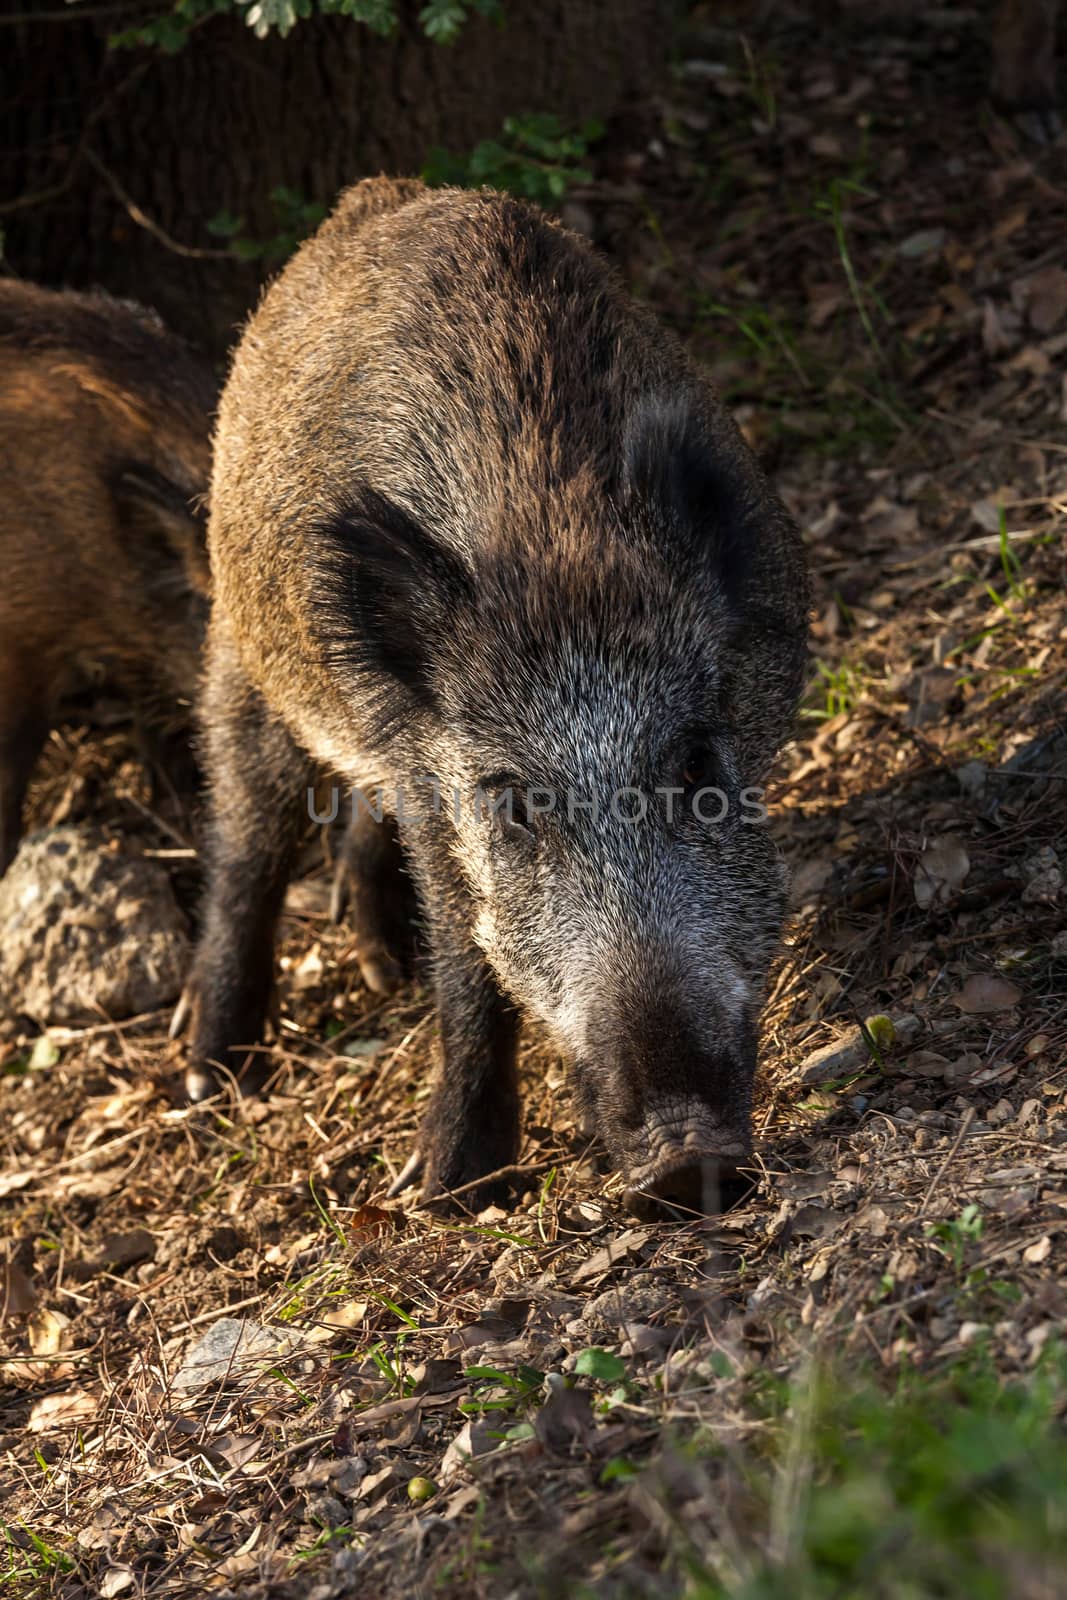 Wild boar eat acorns under the oaks by Digoarpi